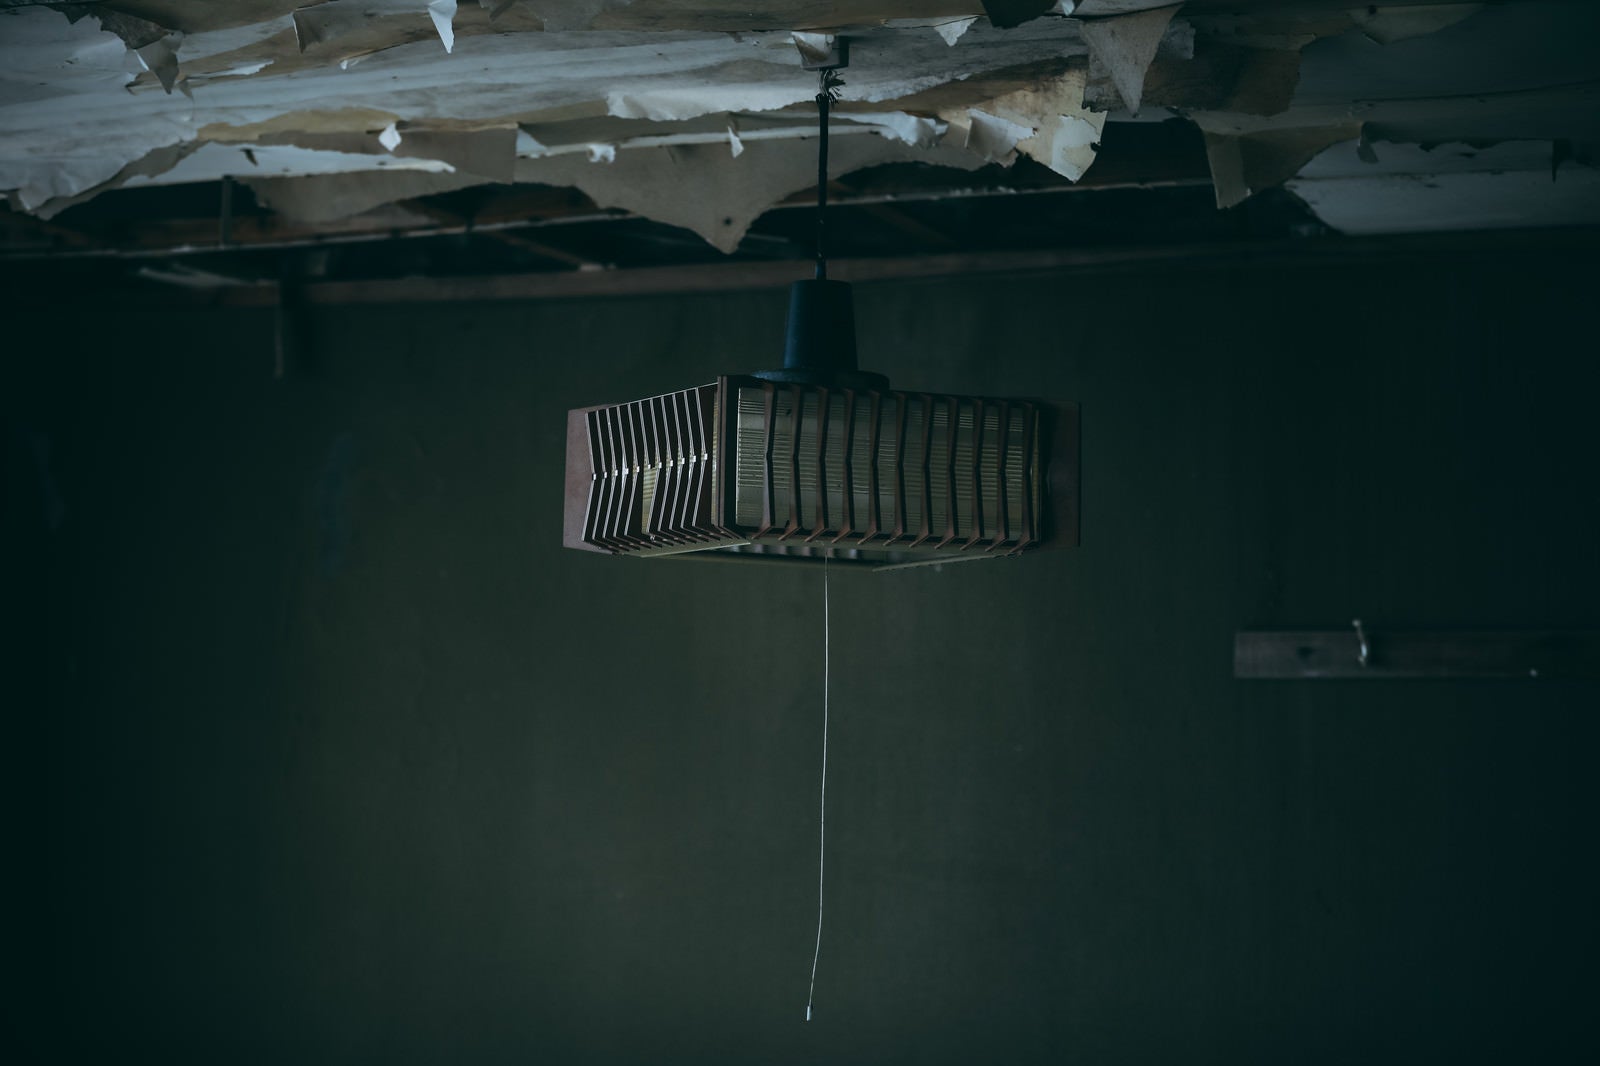 「廃墟で見つけたレトロな照明器具」の写真